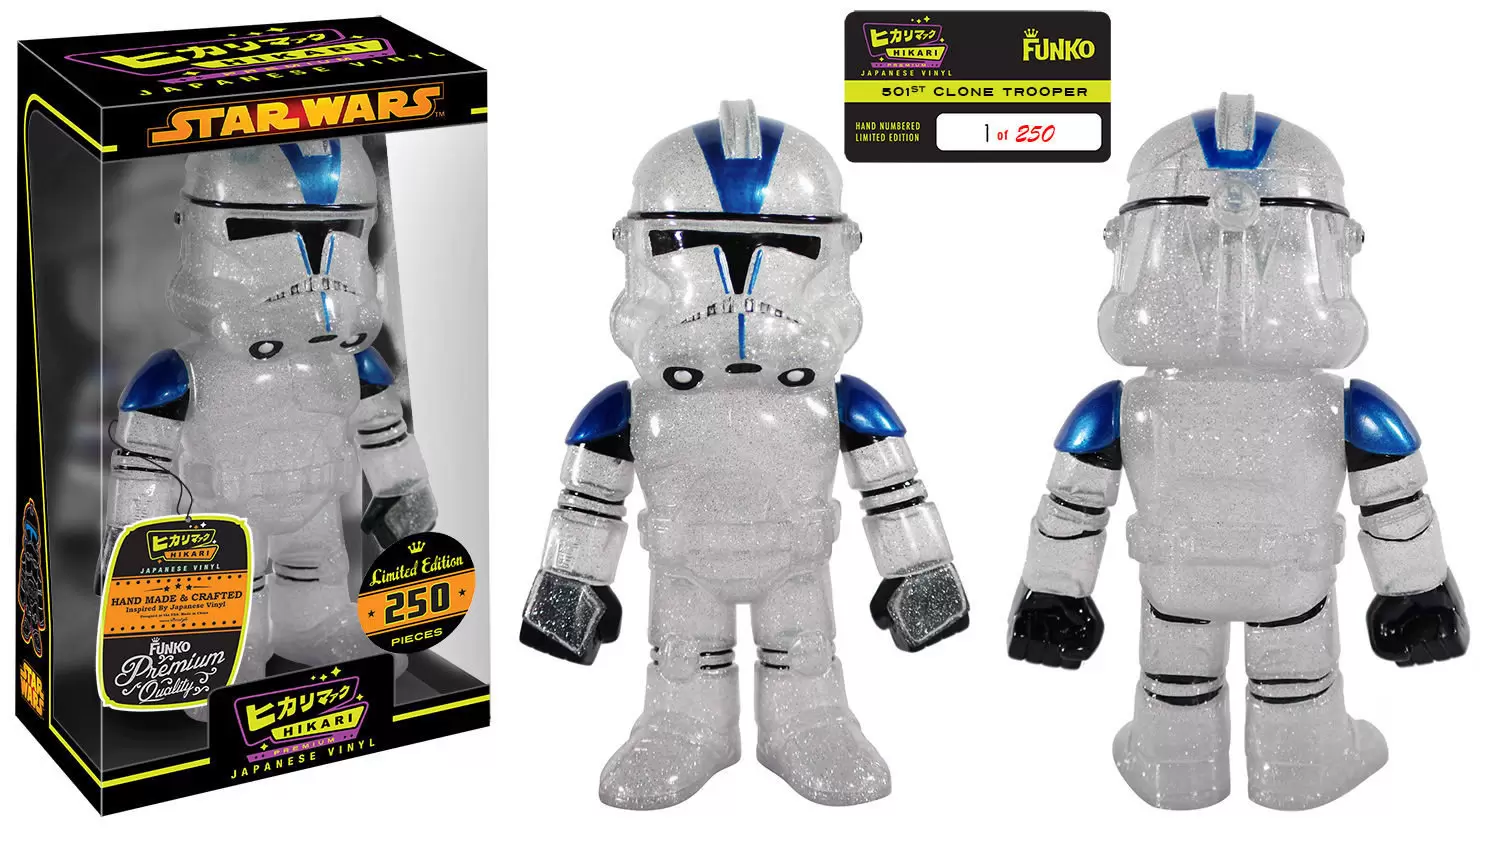 Star Wars - Glitter 501st Clone Trooper